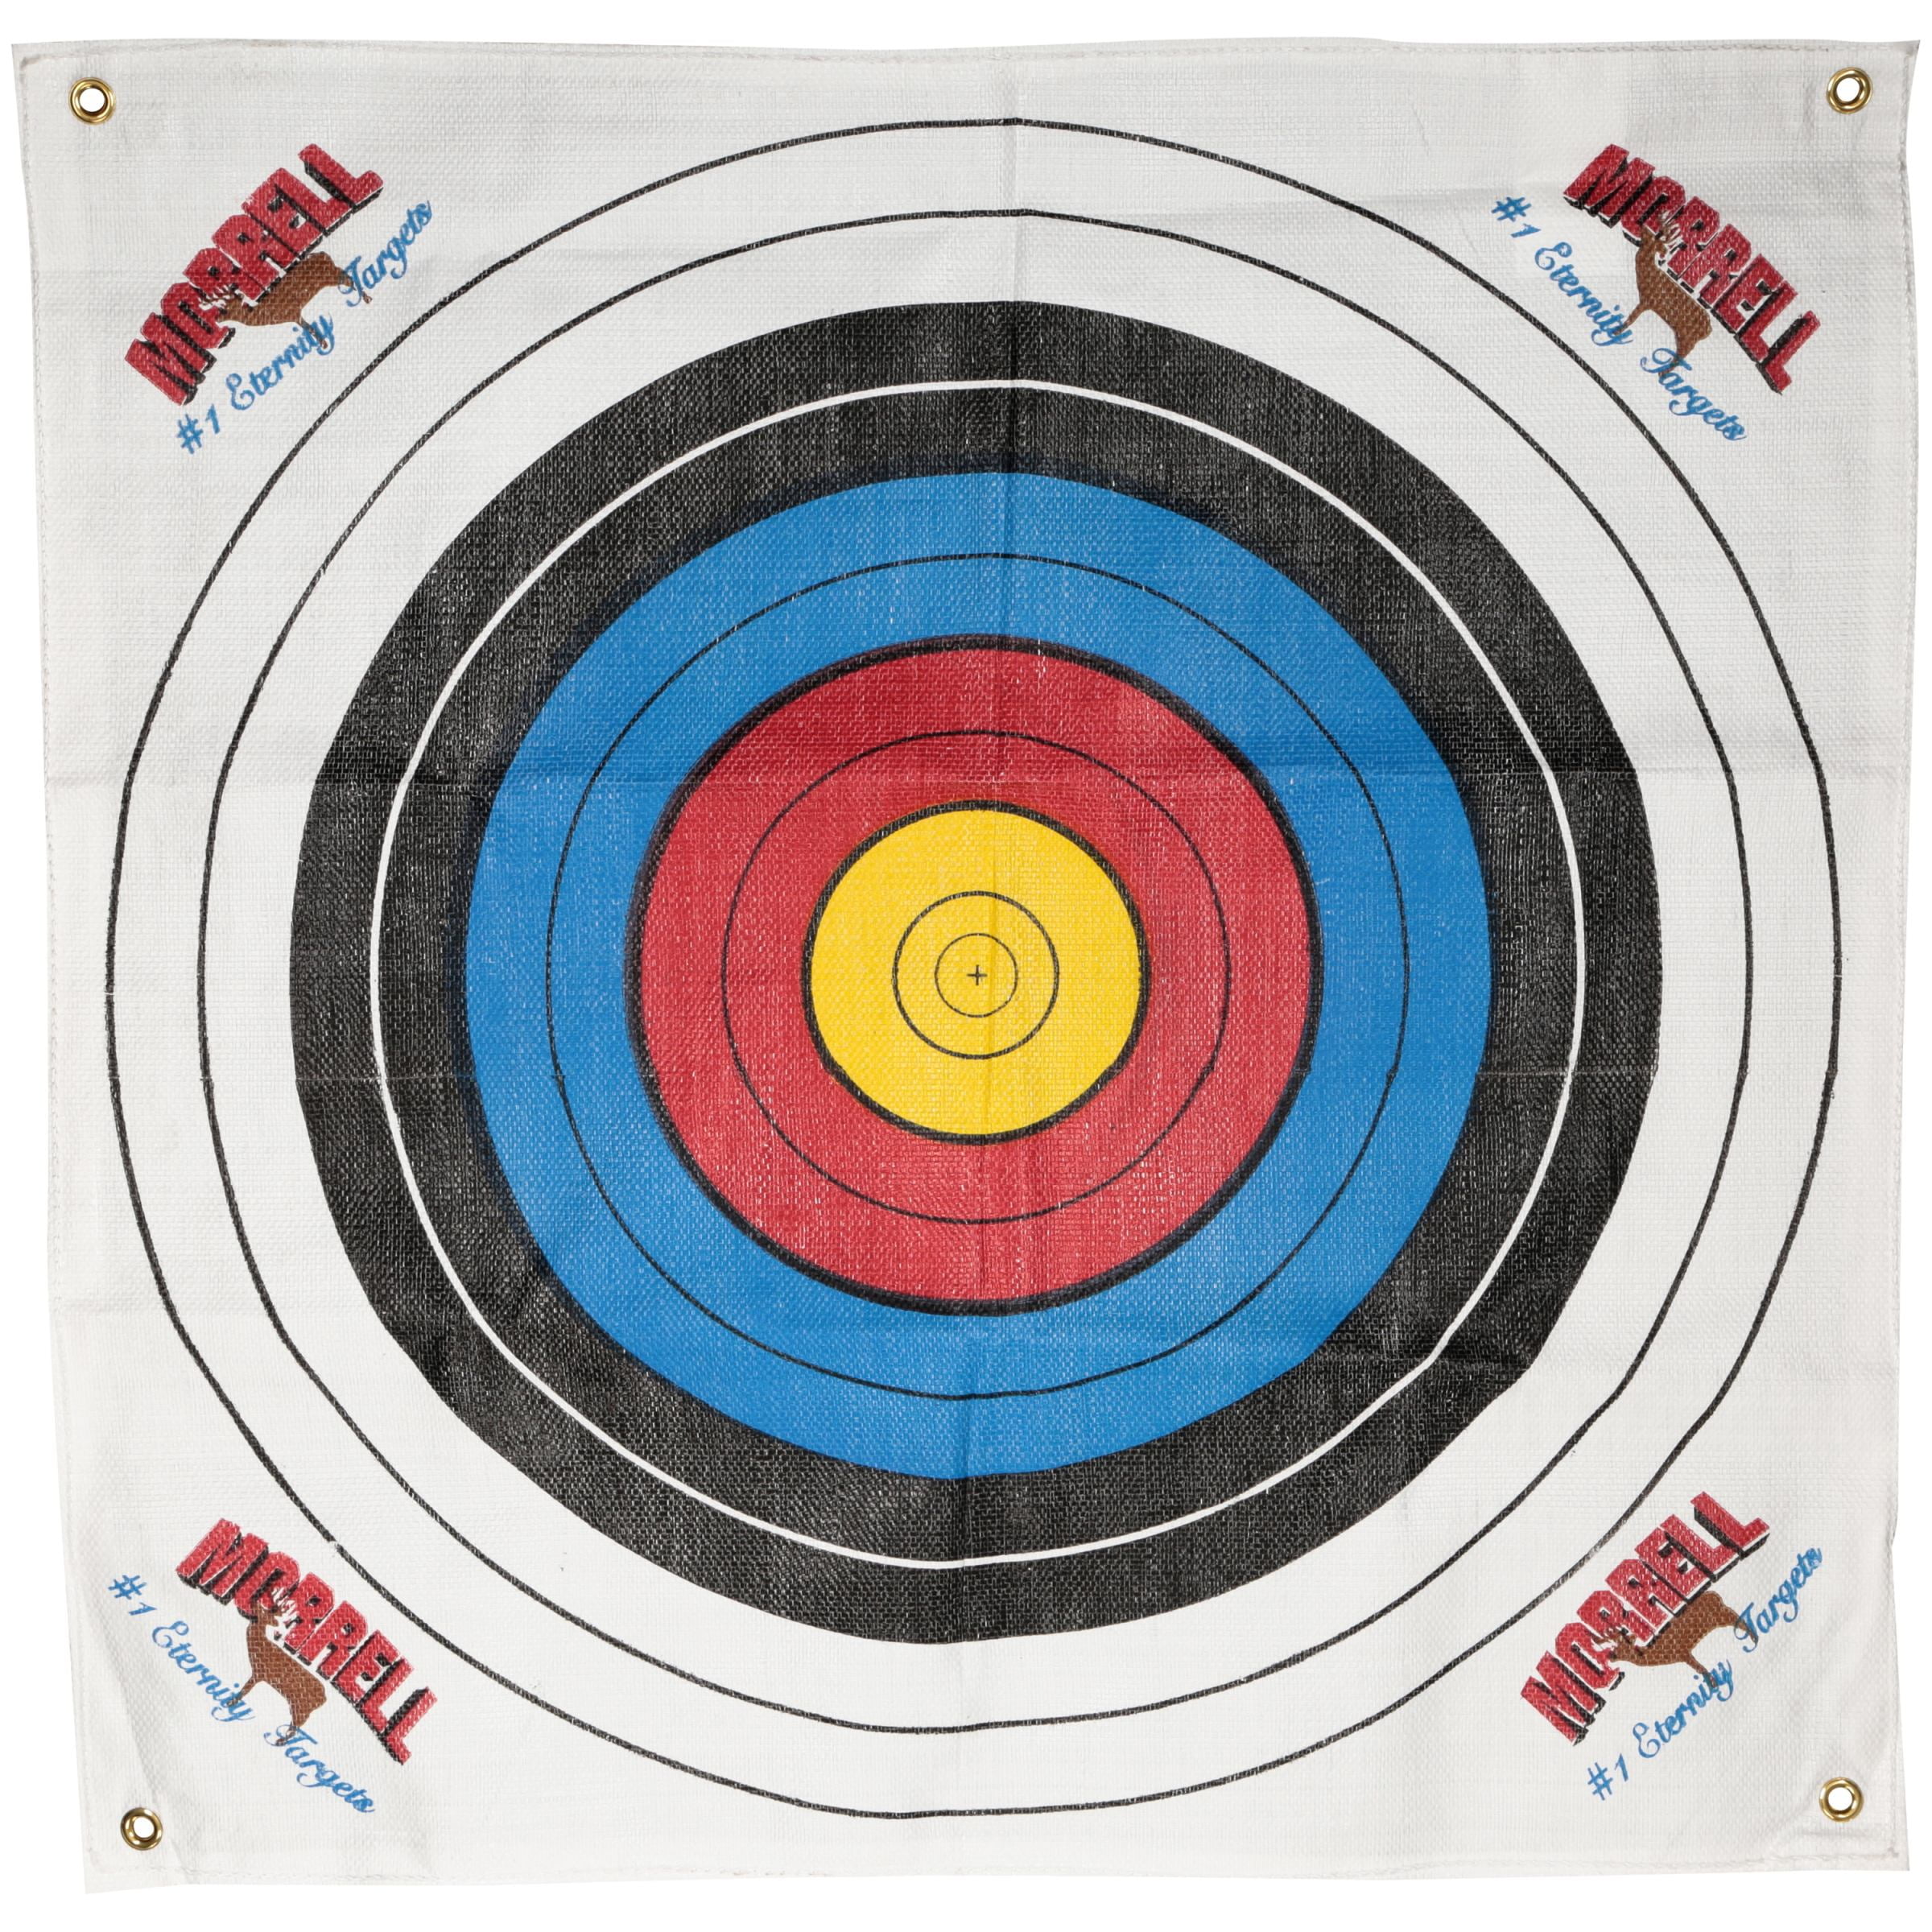 Standing Bear New Morrell Targets Polypropylene Archery Target Face 